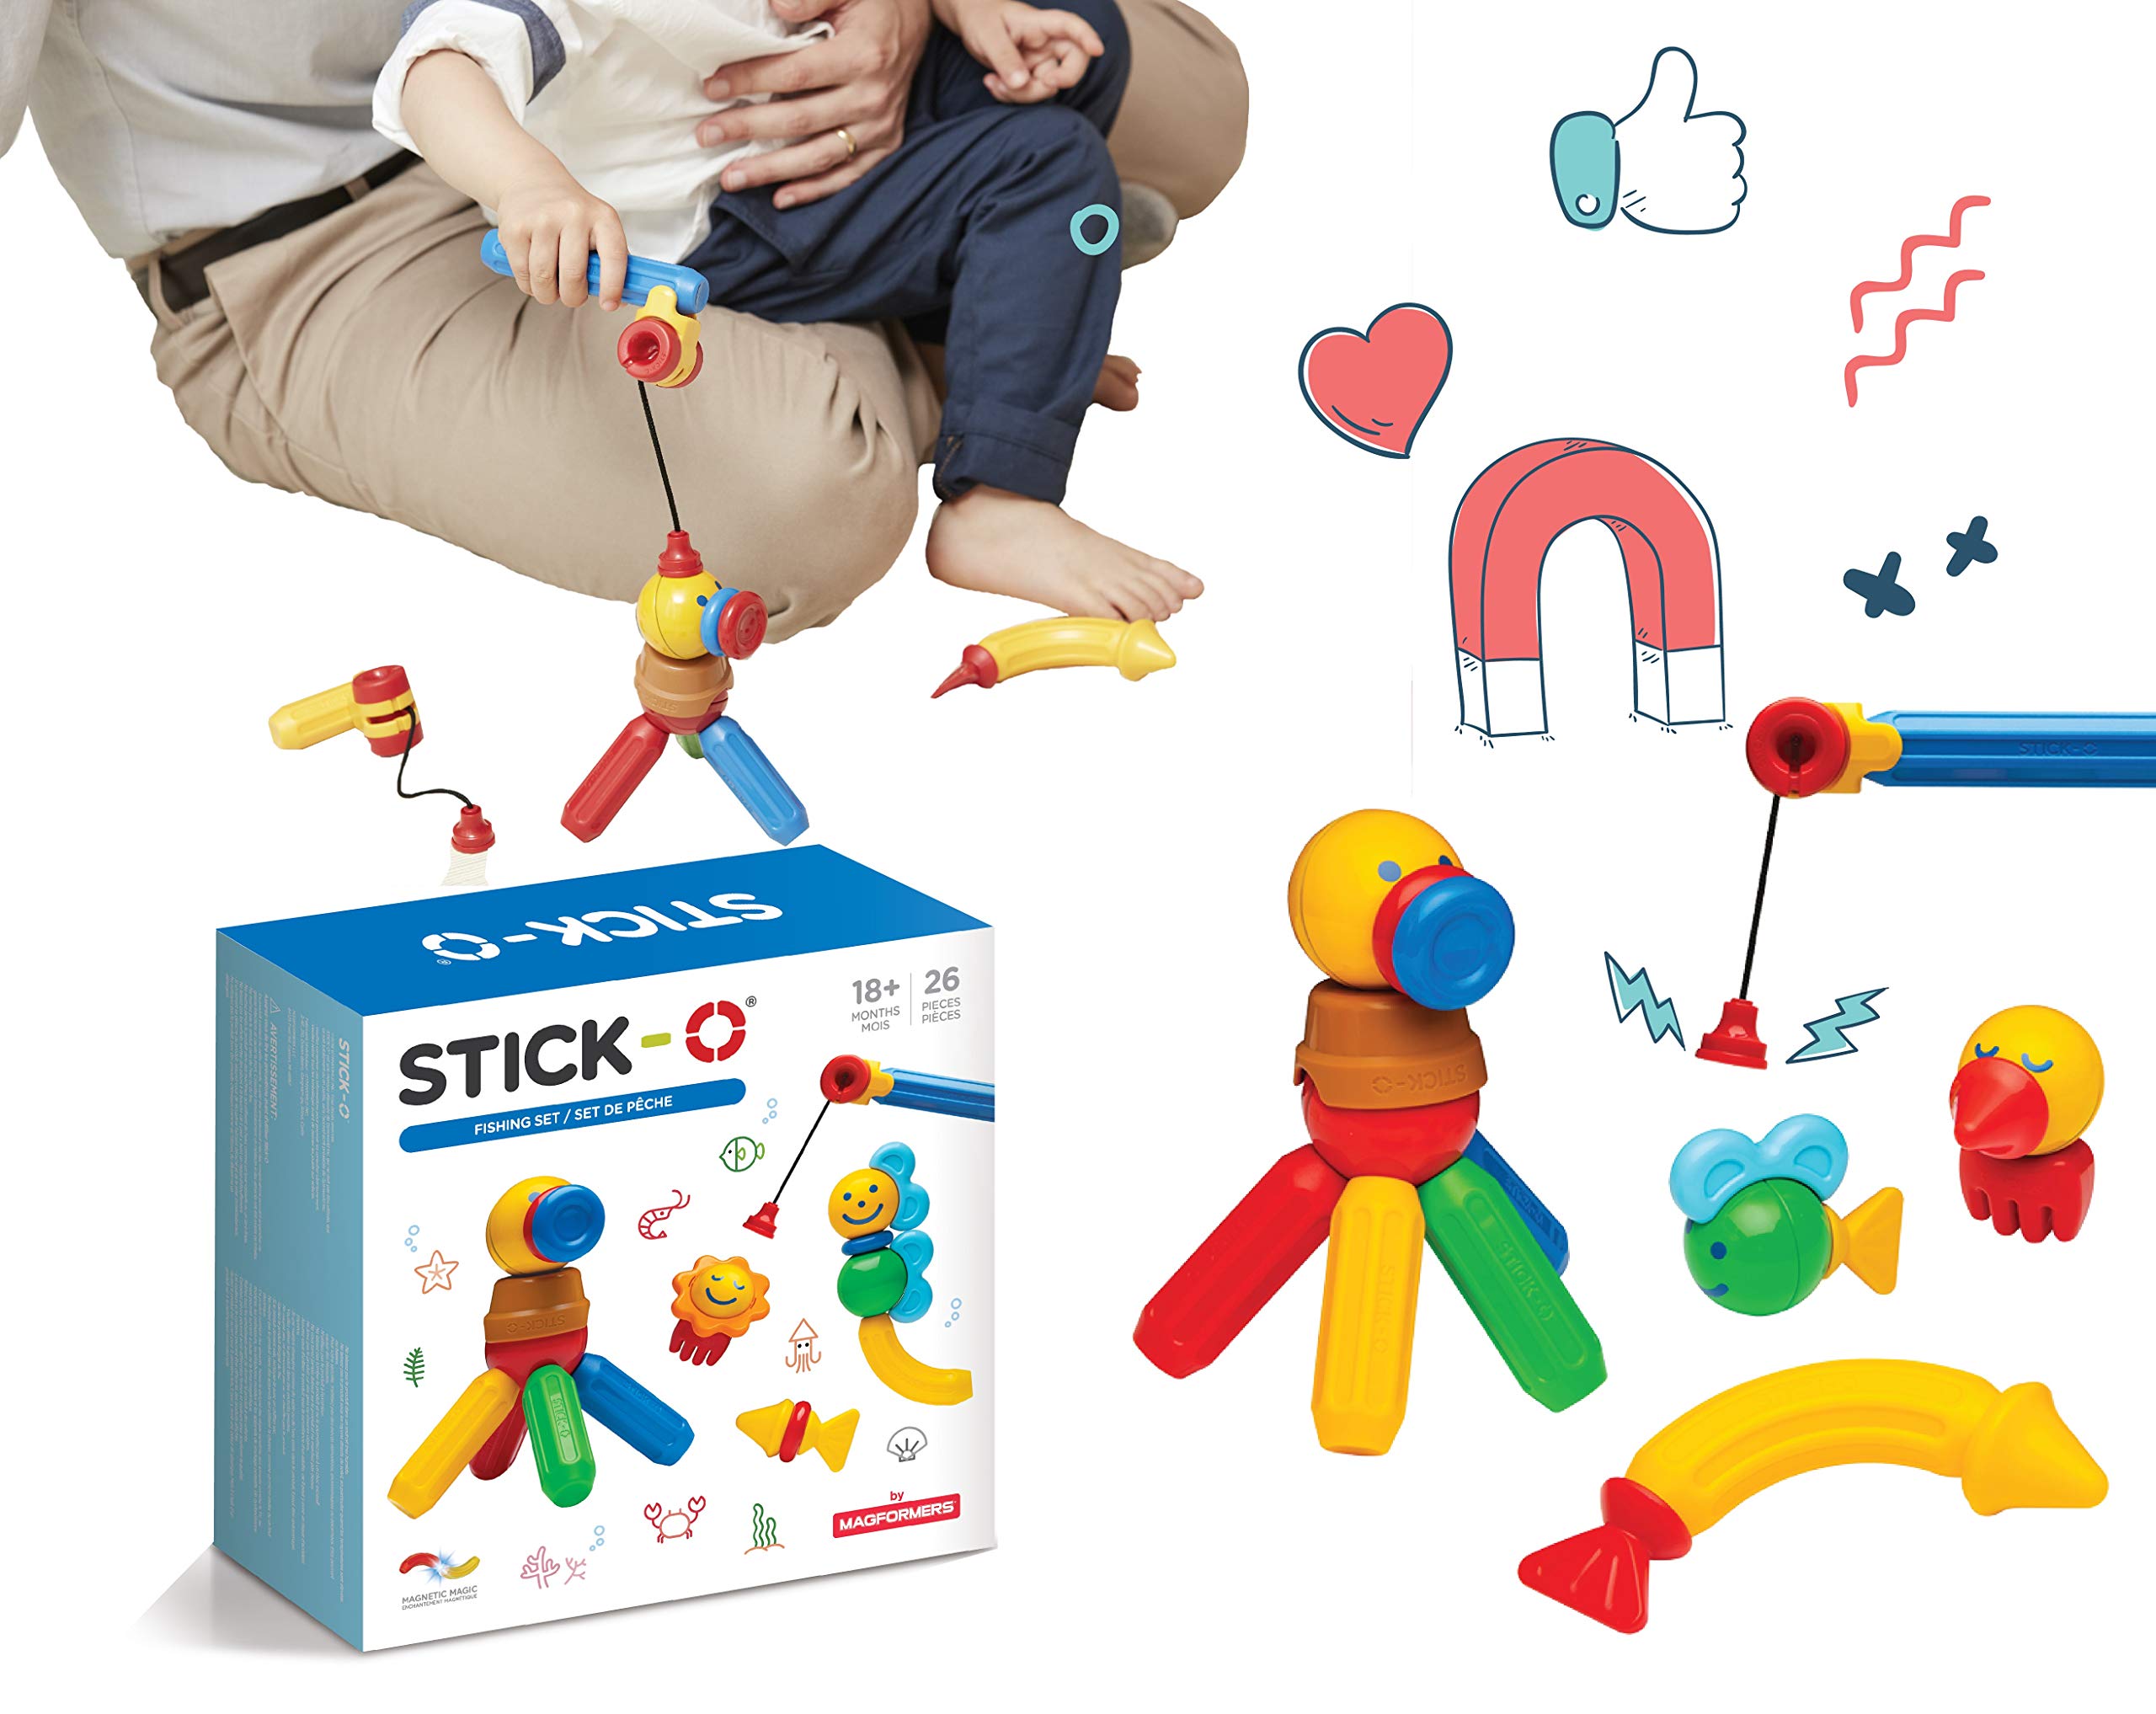 Stick-O magnetische Bausteine für Kinder ab 1 Jahre, kreatives Konstruktionsspielzeug, Lernspielzeug mit Magnet, Angel Set für Mädchen und Jungen, Montessori Spielzeug, 26 Teile Set,